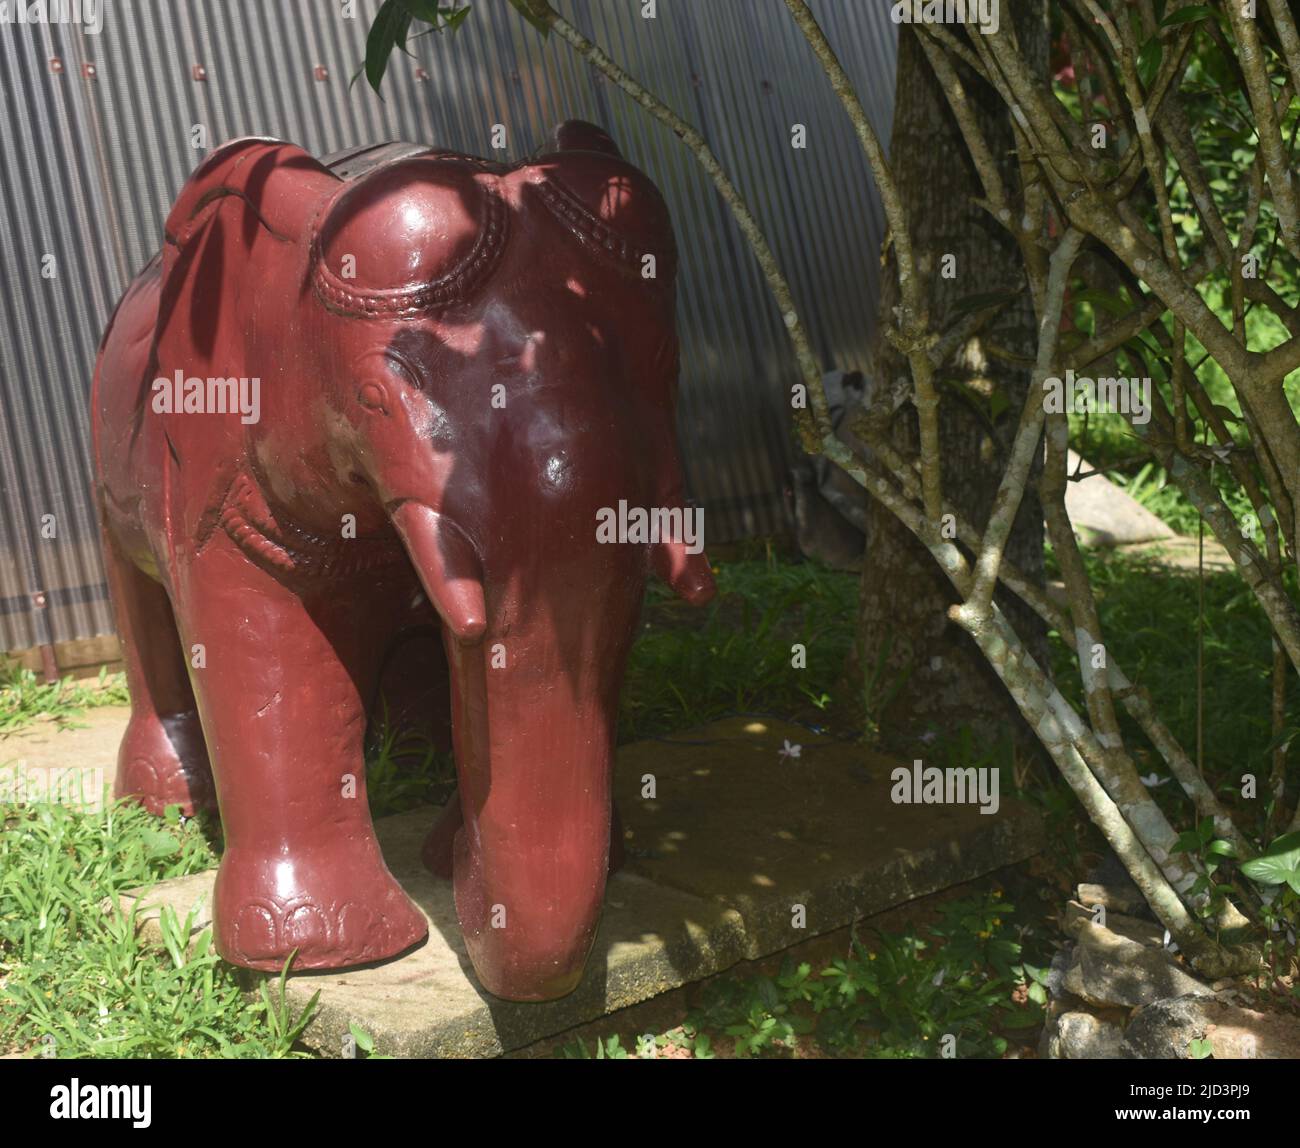 Un éléphant en pierre placé dans le jardin d'un spa Ayurveda. Colombo, Sri Lanka. Banque D'Images